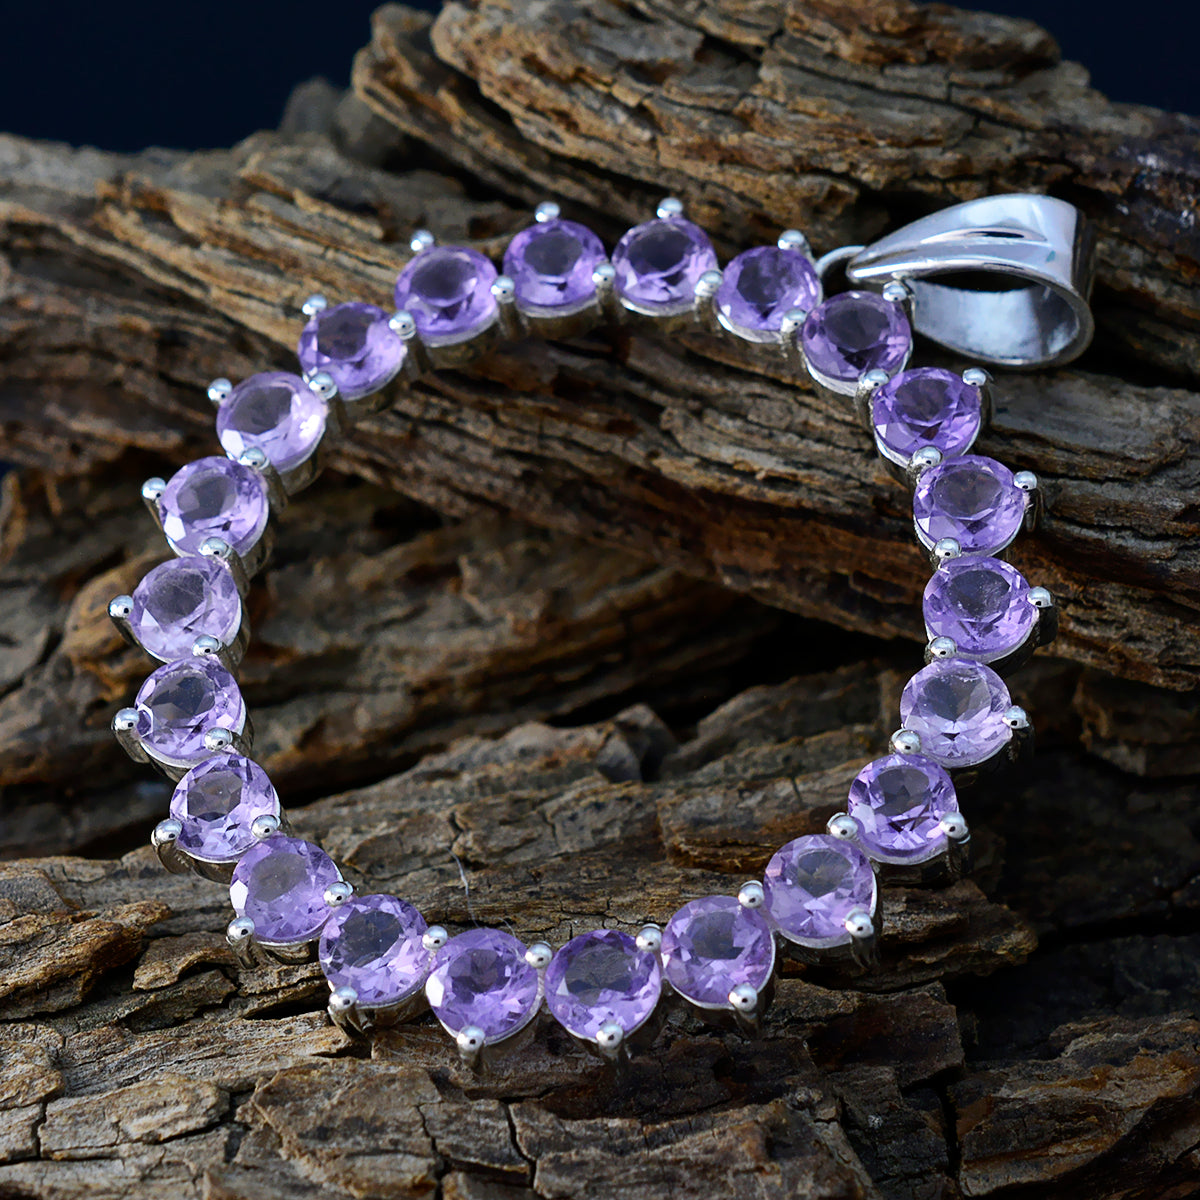 Riyo preciosas gemas redondas facetadas amatista púrpura colgante de plata regalo para compromiso